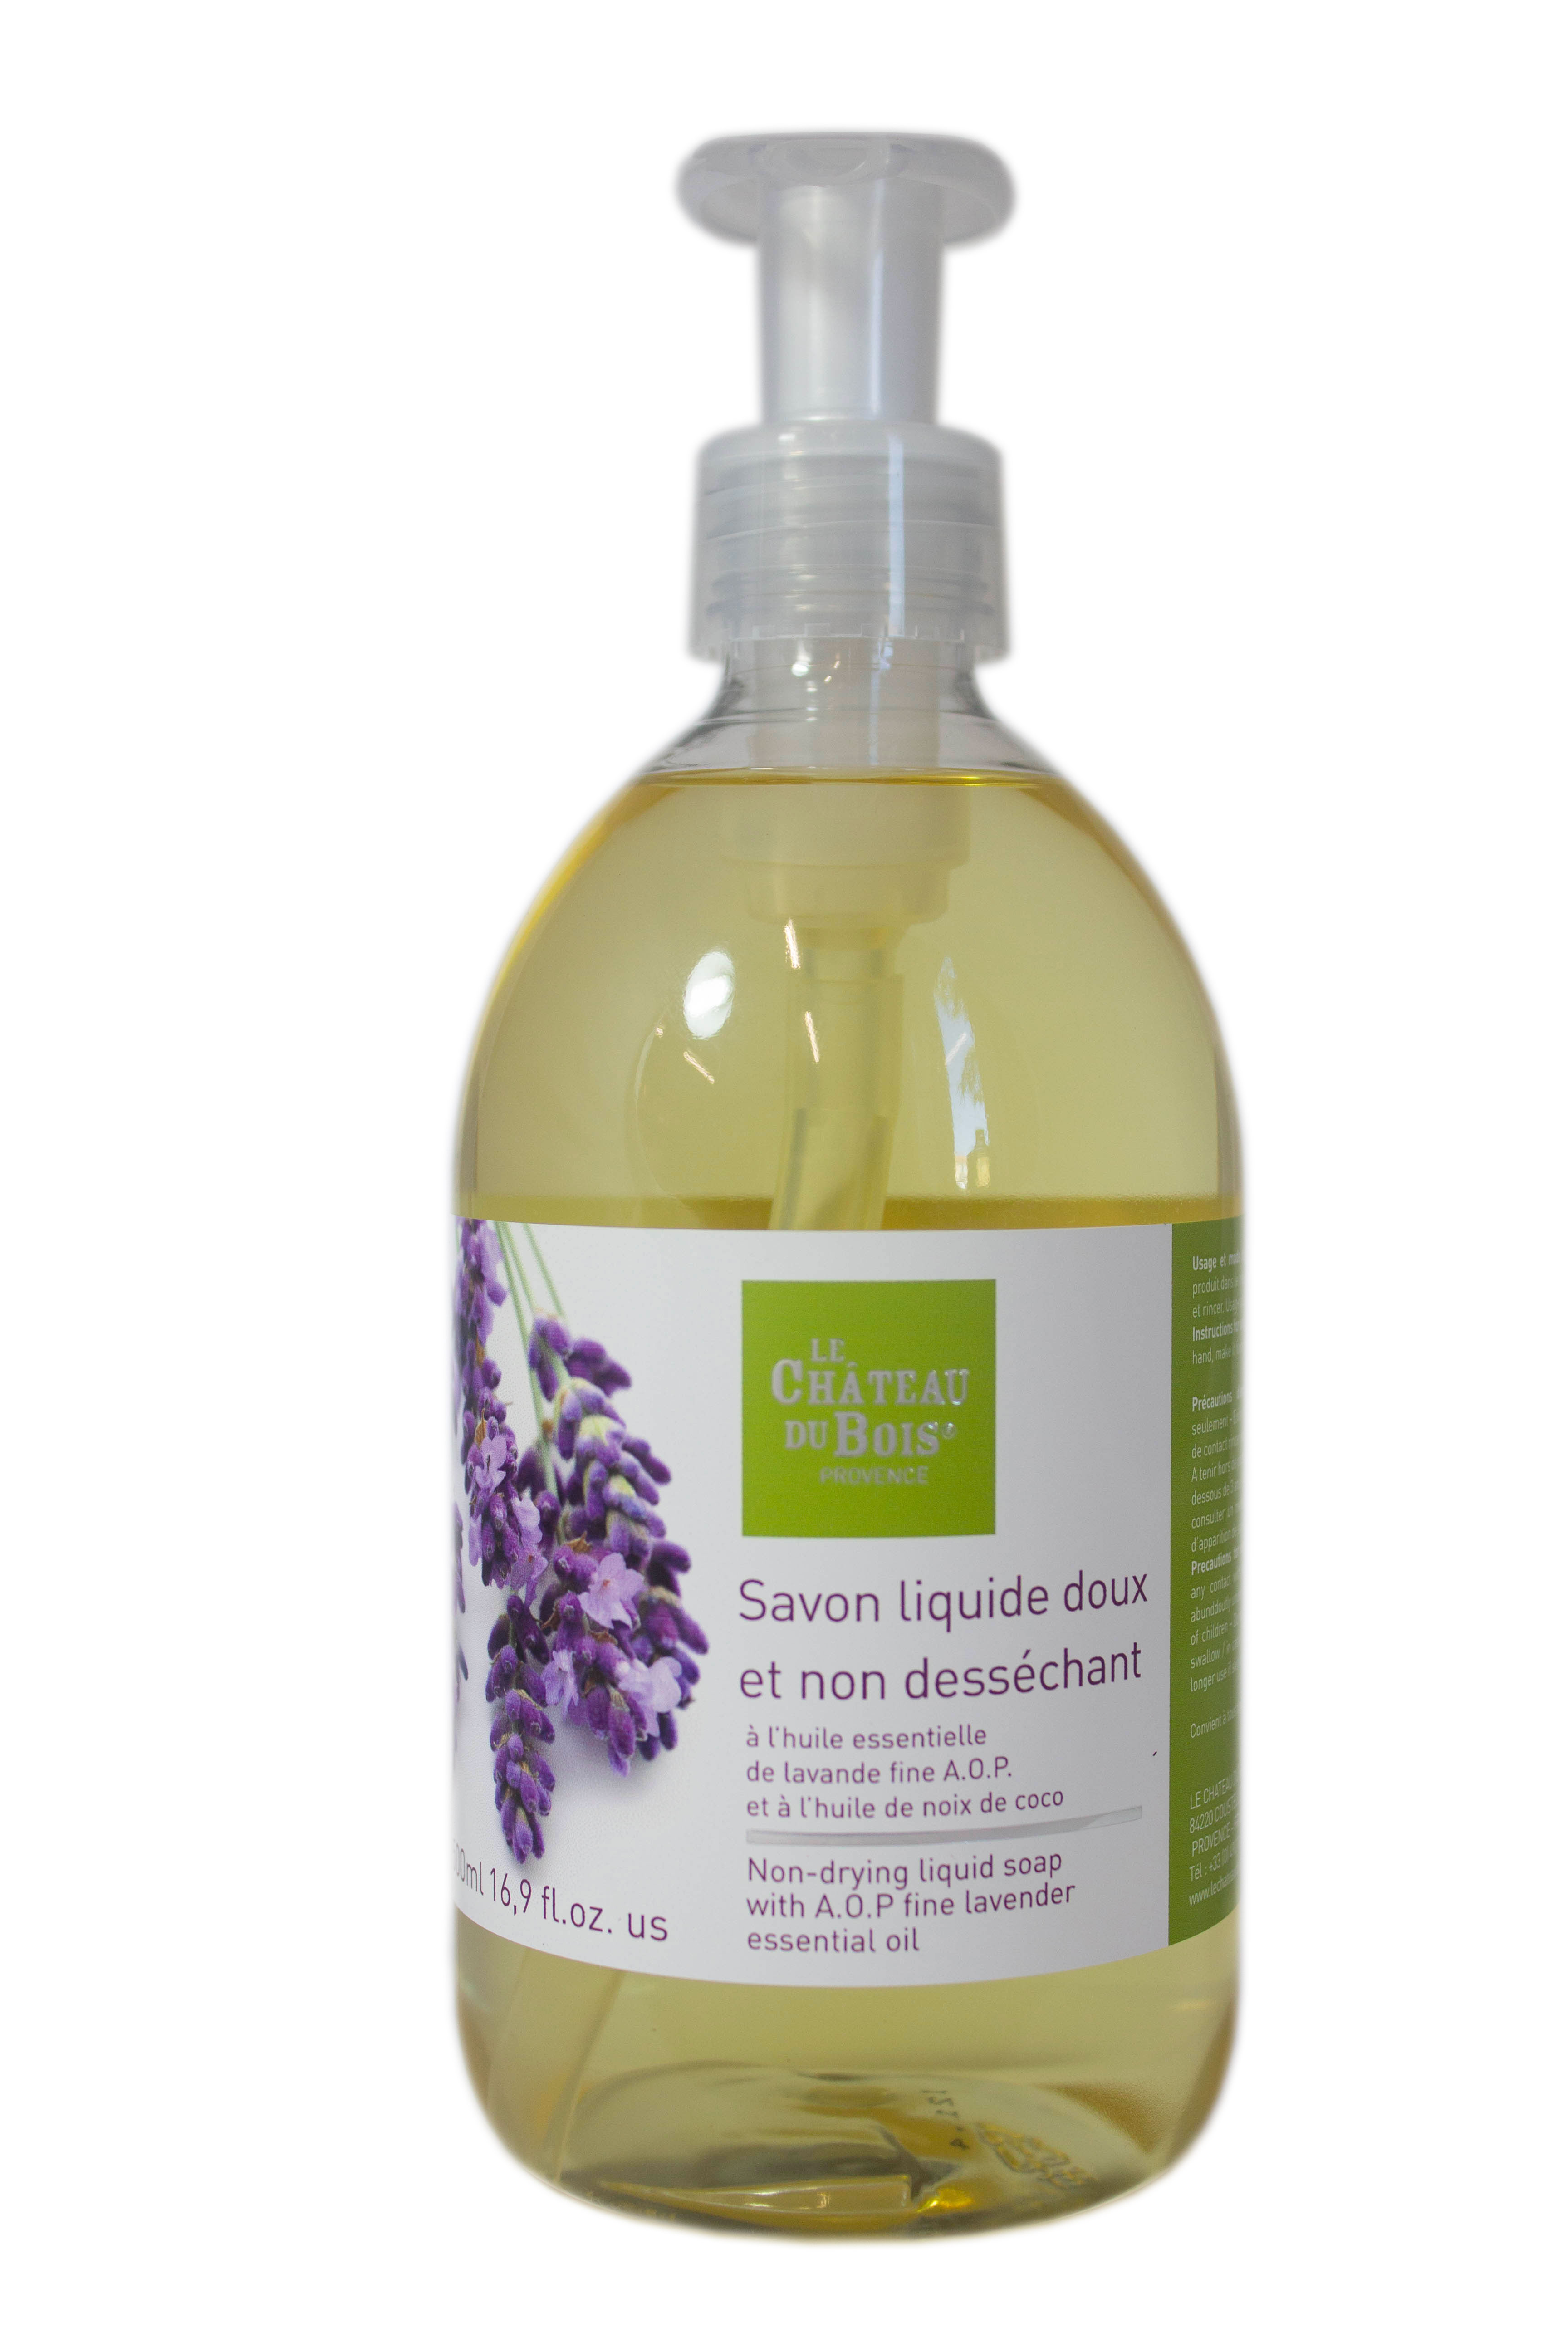 Non-drying liquid soap with fine lavender 16.67 fl.oz.us